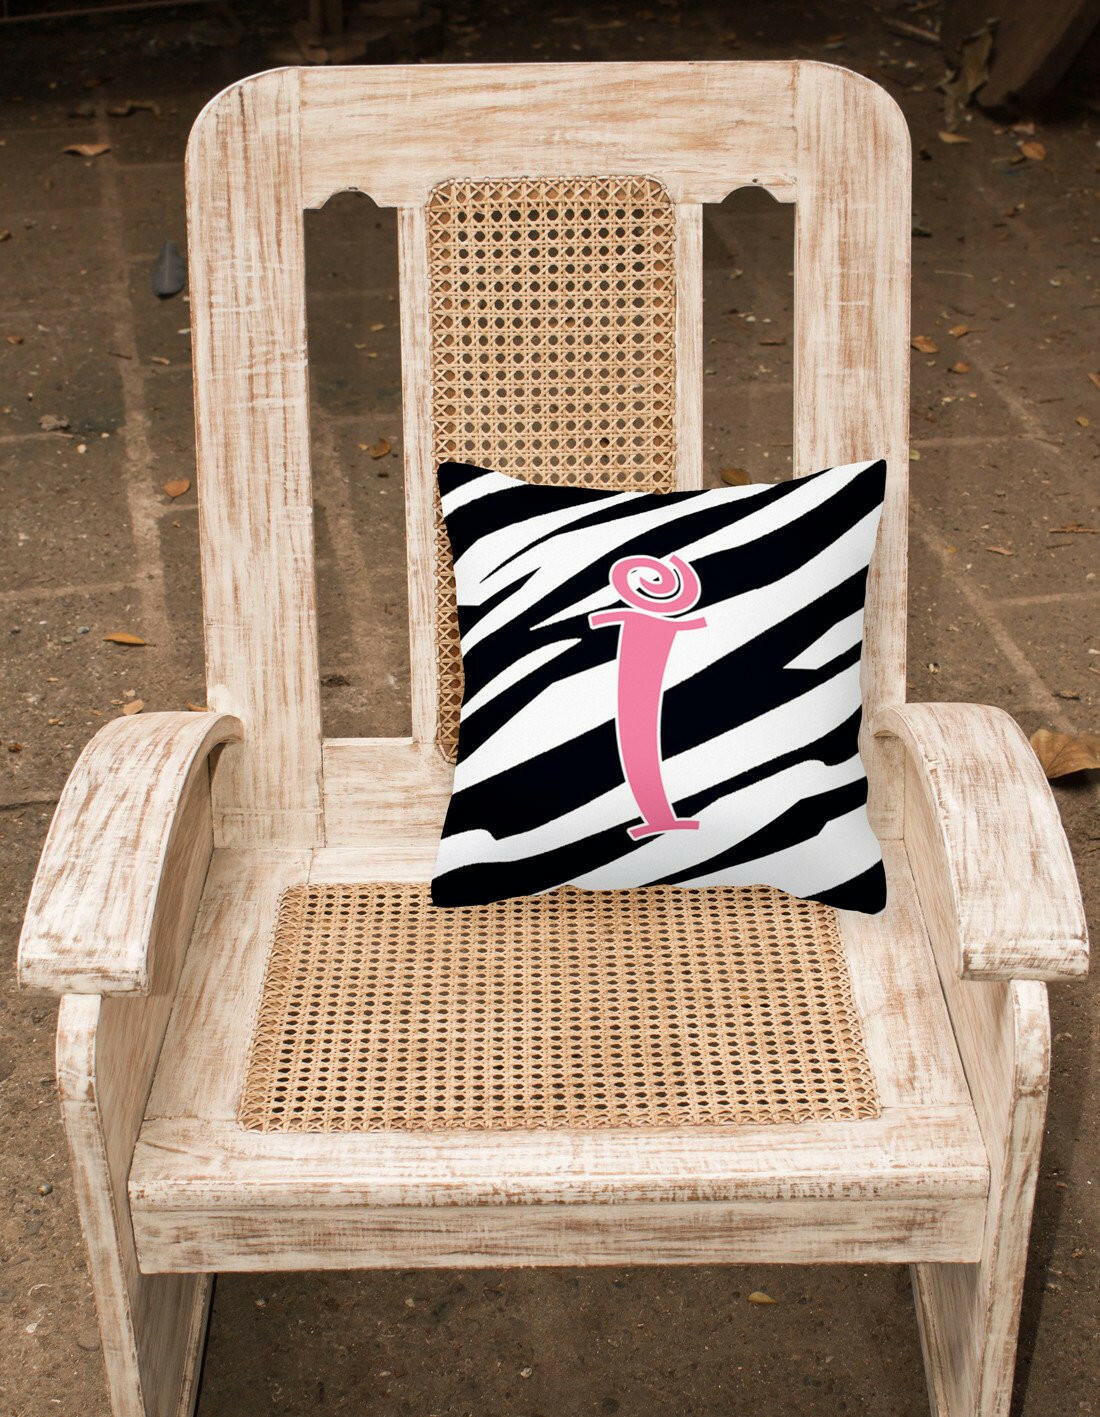 Monogram Initial I Zebra Stripe and Pink Decorative Canvas Fabric Pillow CJ1037 - the-store.com